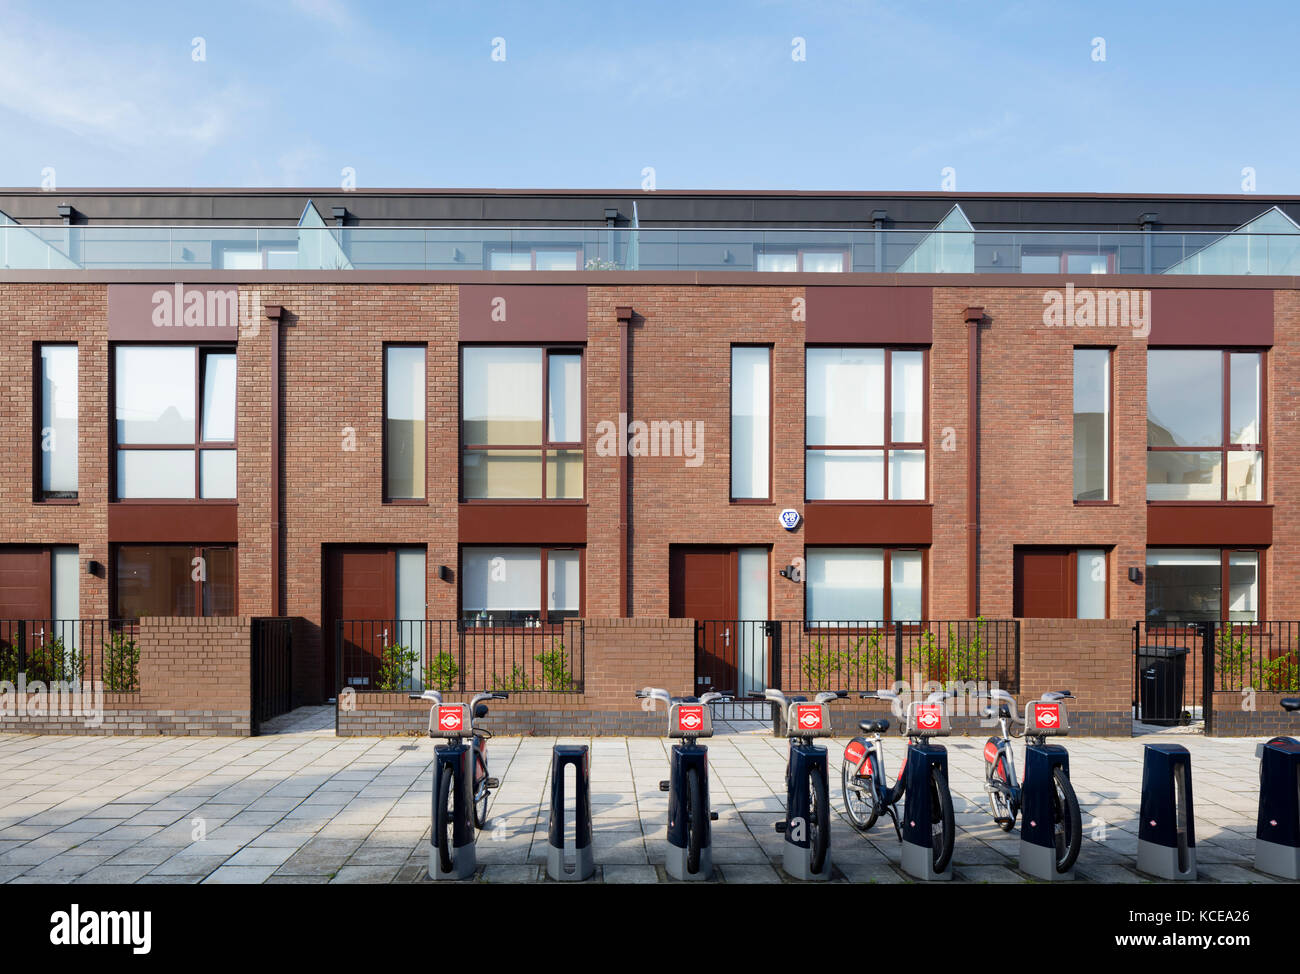 Développement du logement de style moderne à Lambeth Londres avec santander bicyclettes et station d'accueil. Banque D'Images